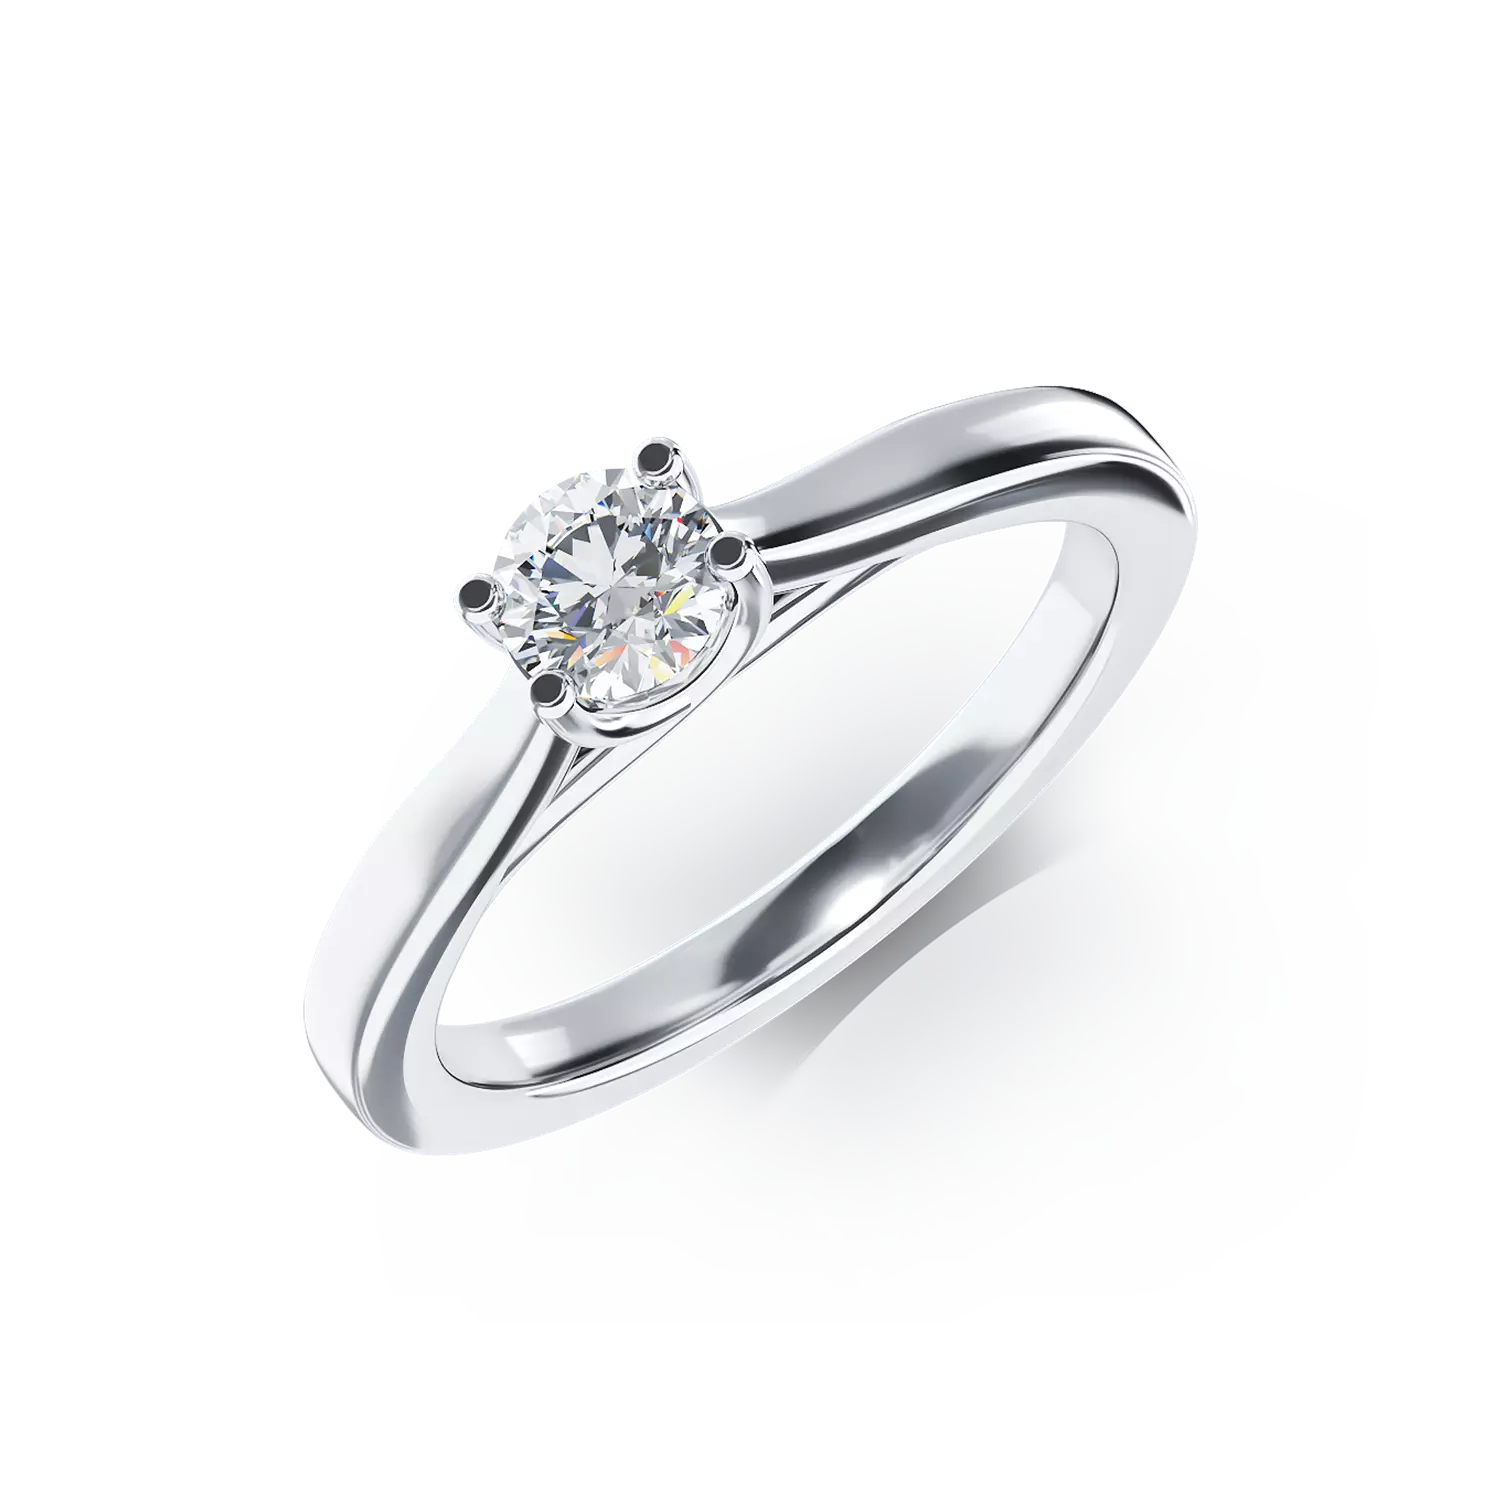 Eljegyzési gyűrű 18K-os fehér aranyból 0,35ct gyémánttal. Gramm: 3,88